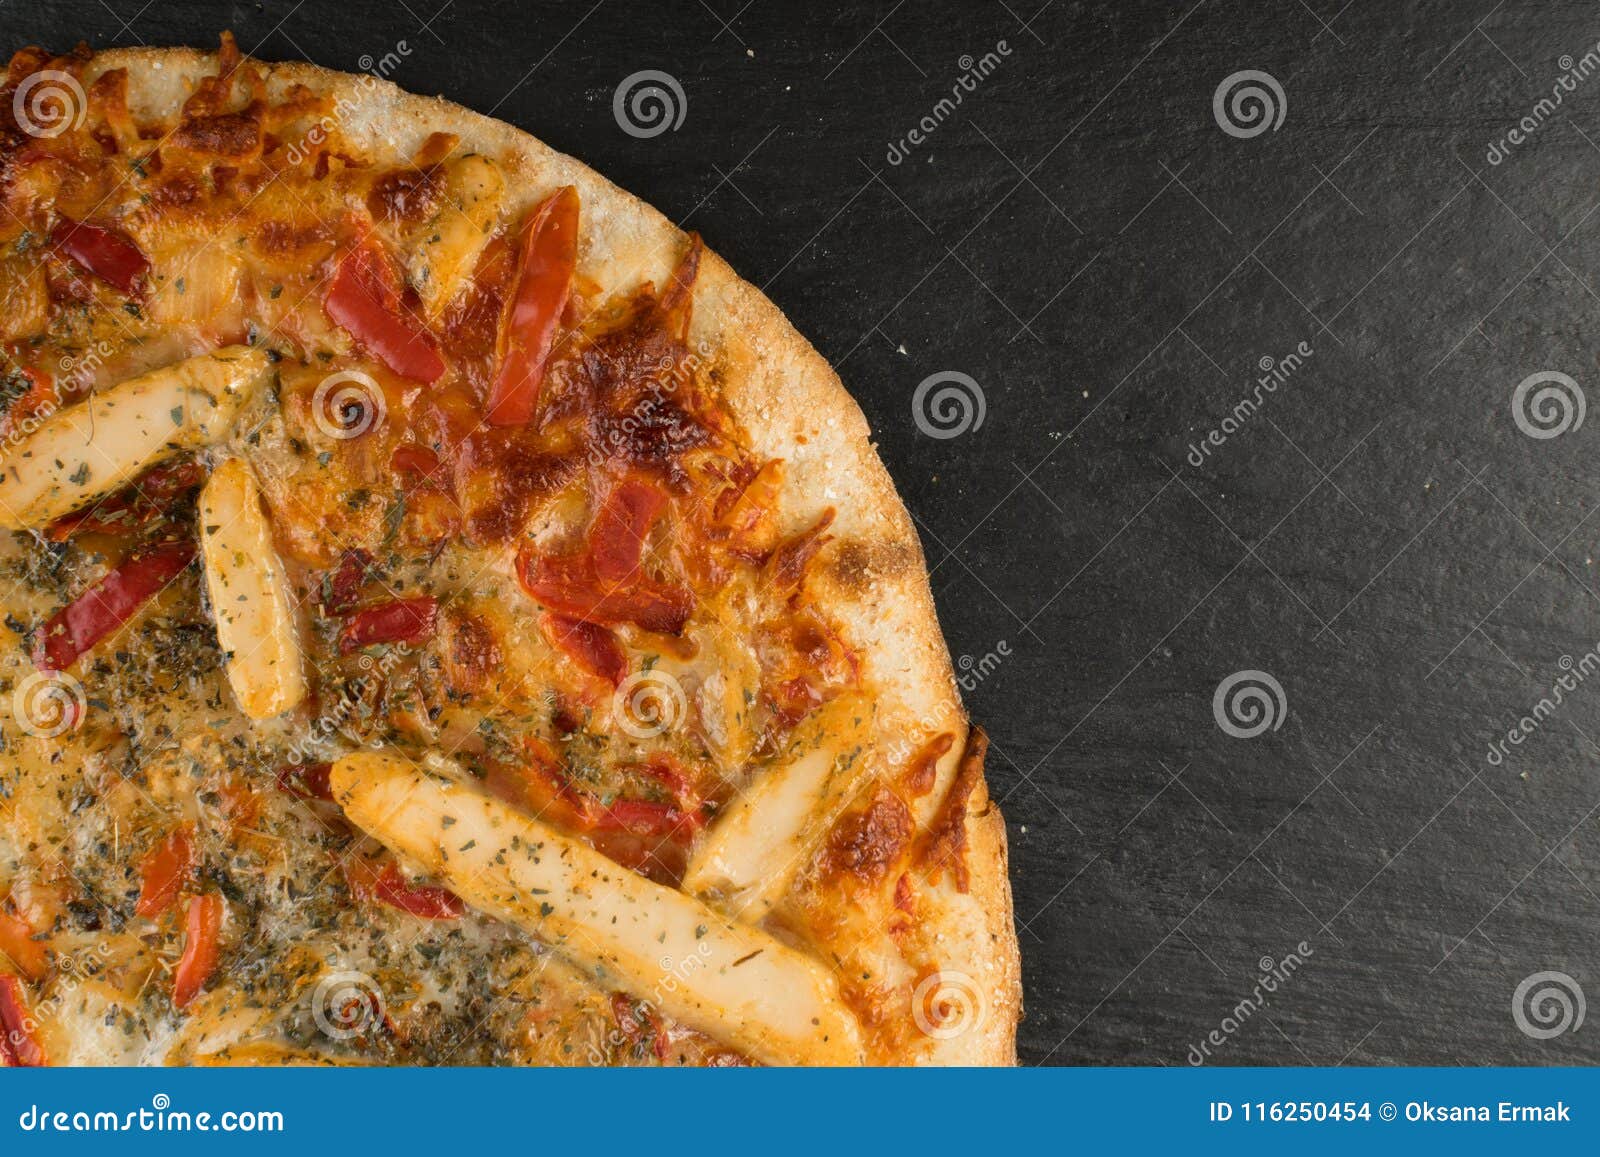 чикен пицца ассортимент пиццы фото 78